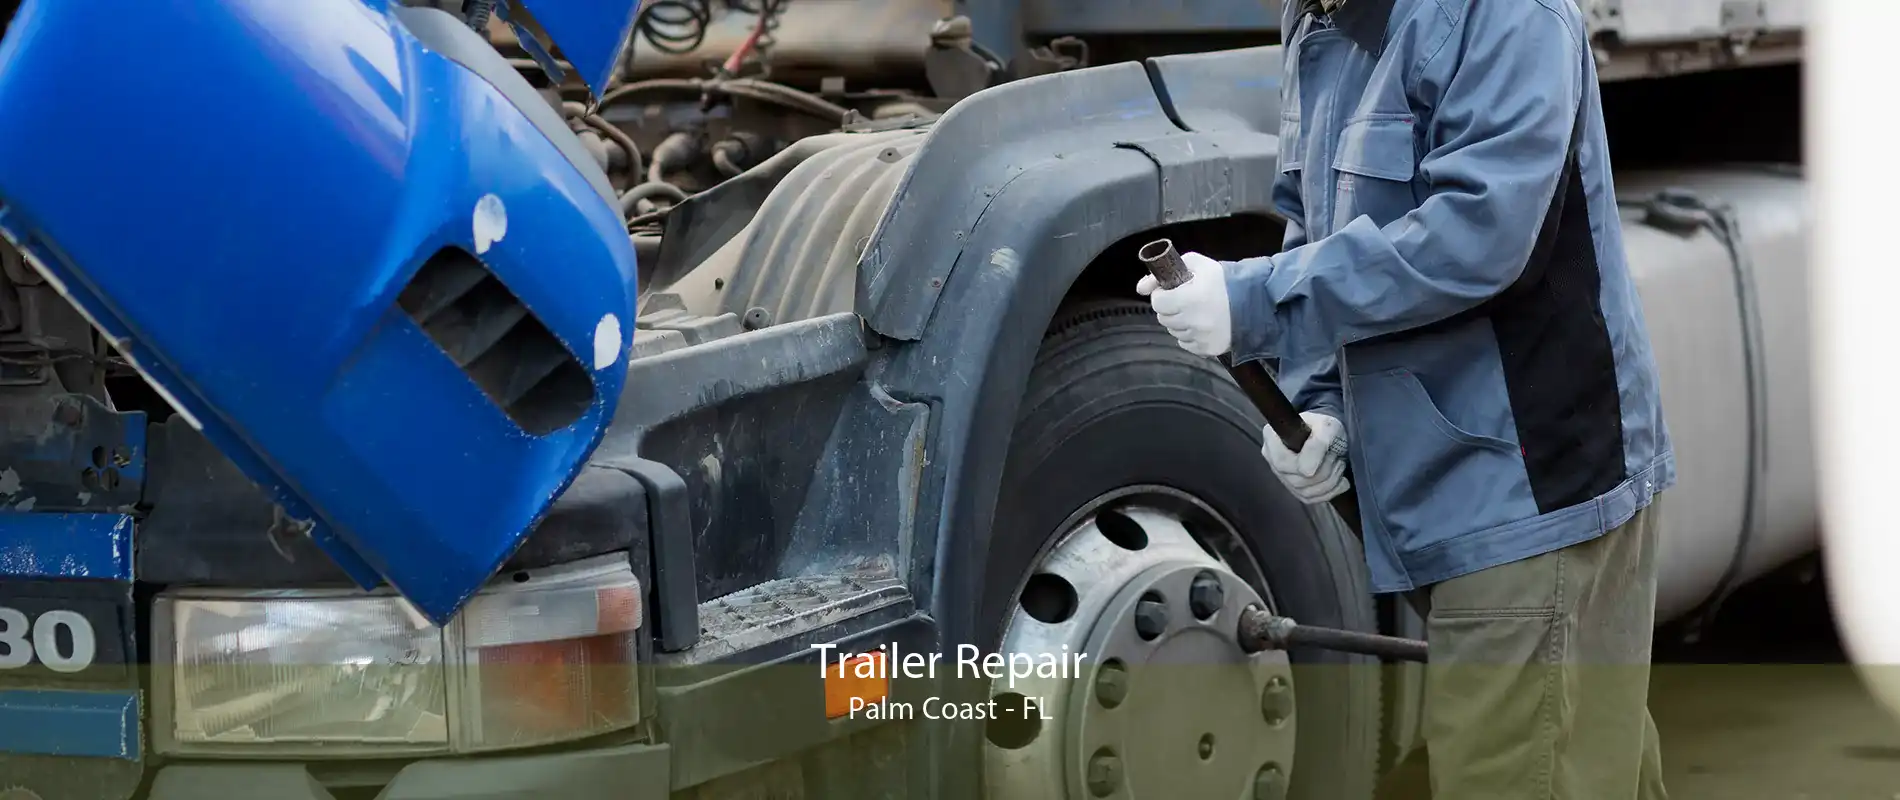 Trailer Repair Palm Coast - FL